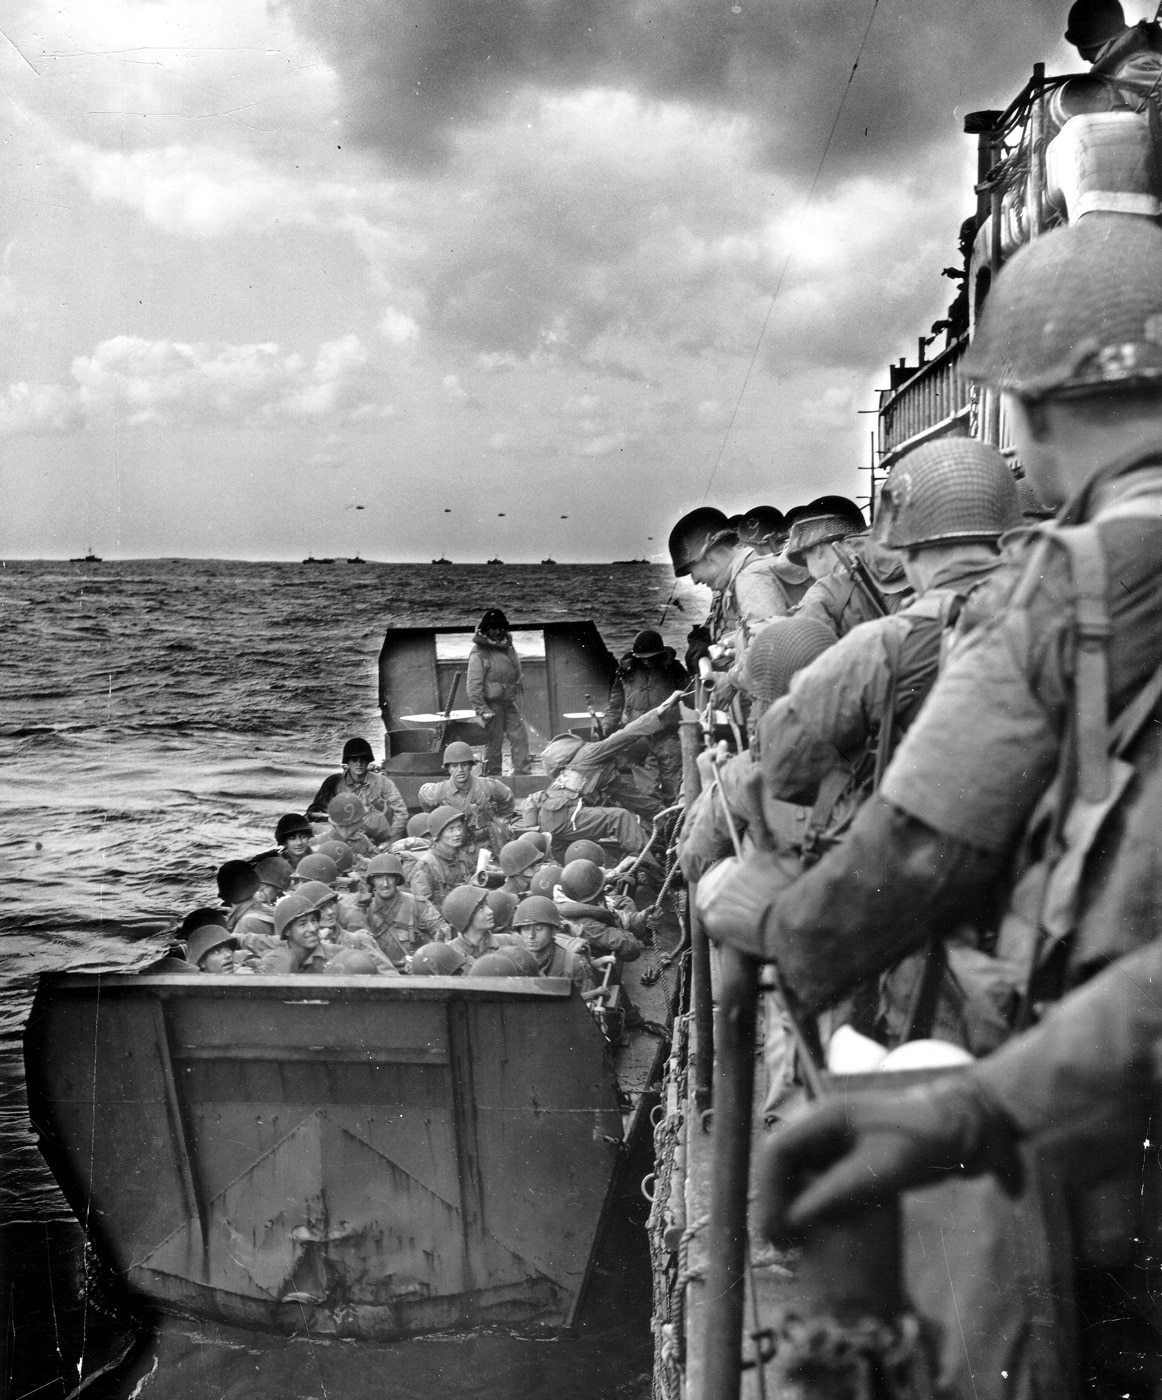 American troops boarding Higgins Boat on D-Day